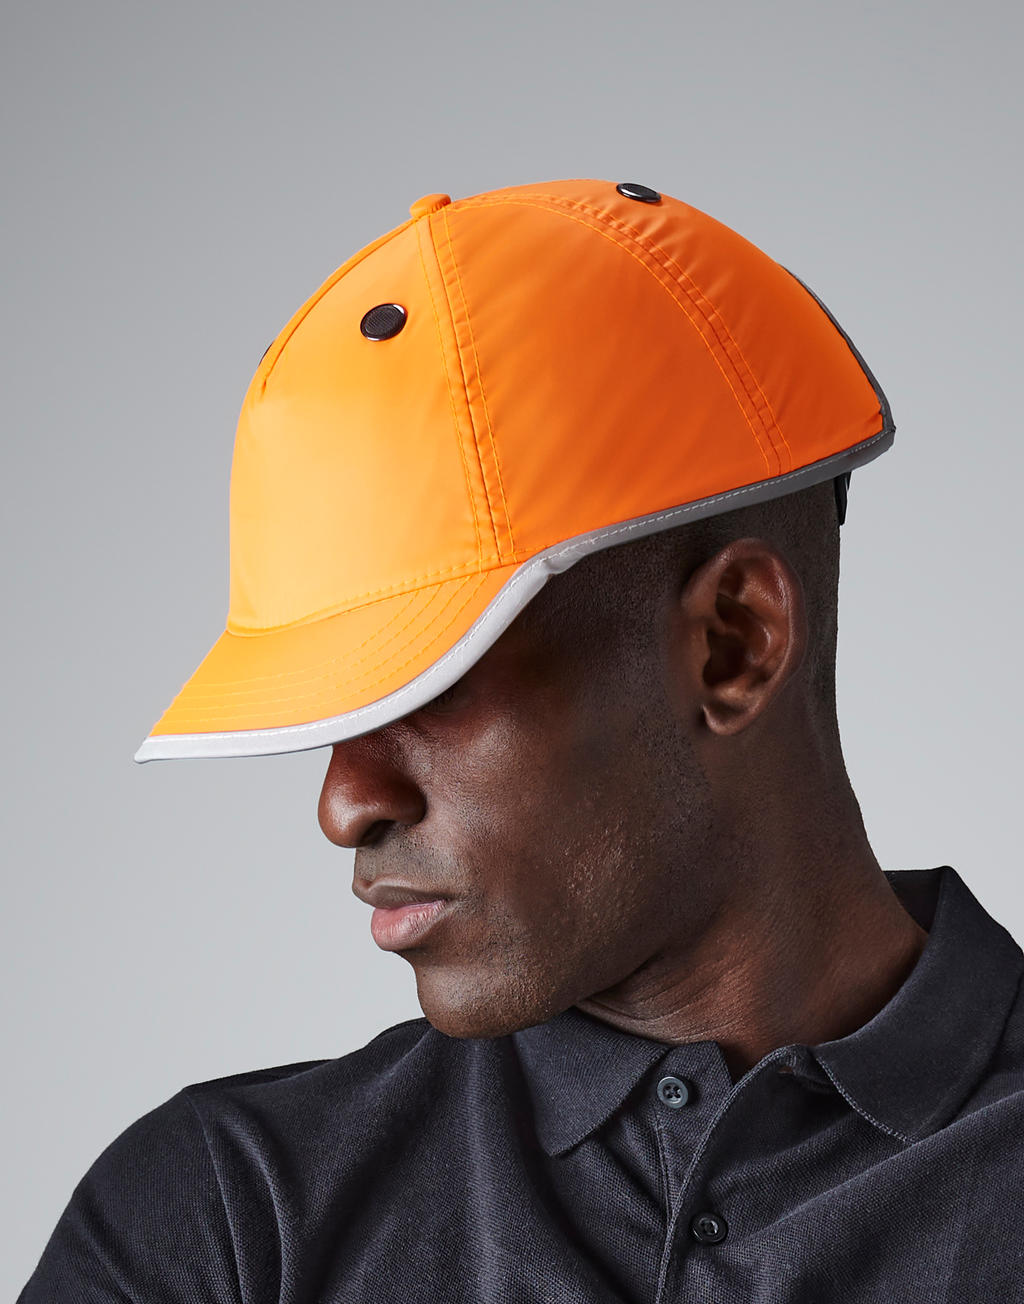  Enhanced-Viz EN812 Bump Cap in Farbe Fluorescent Orange